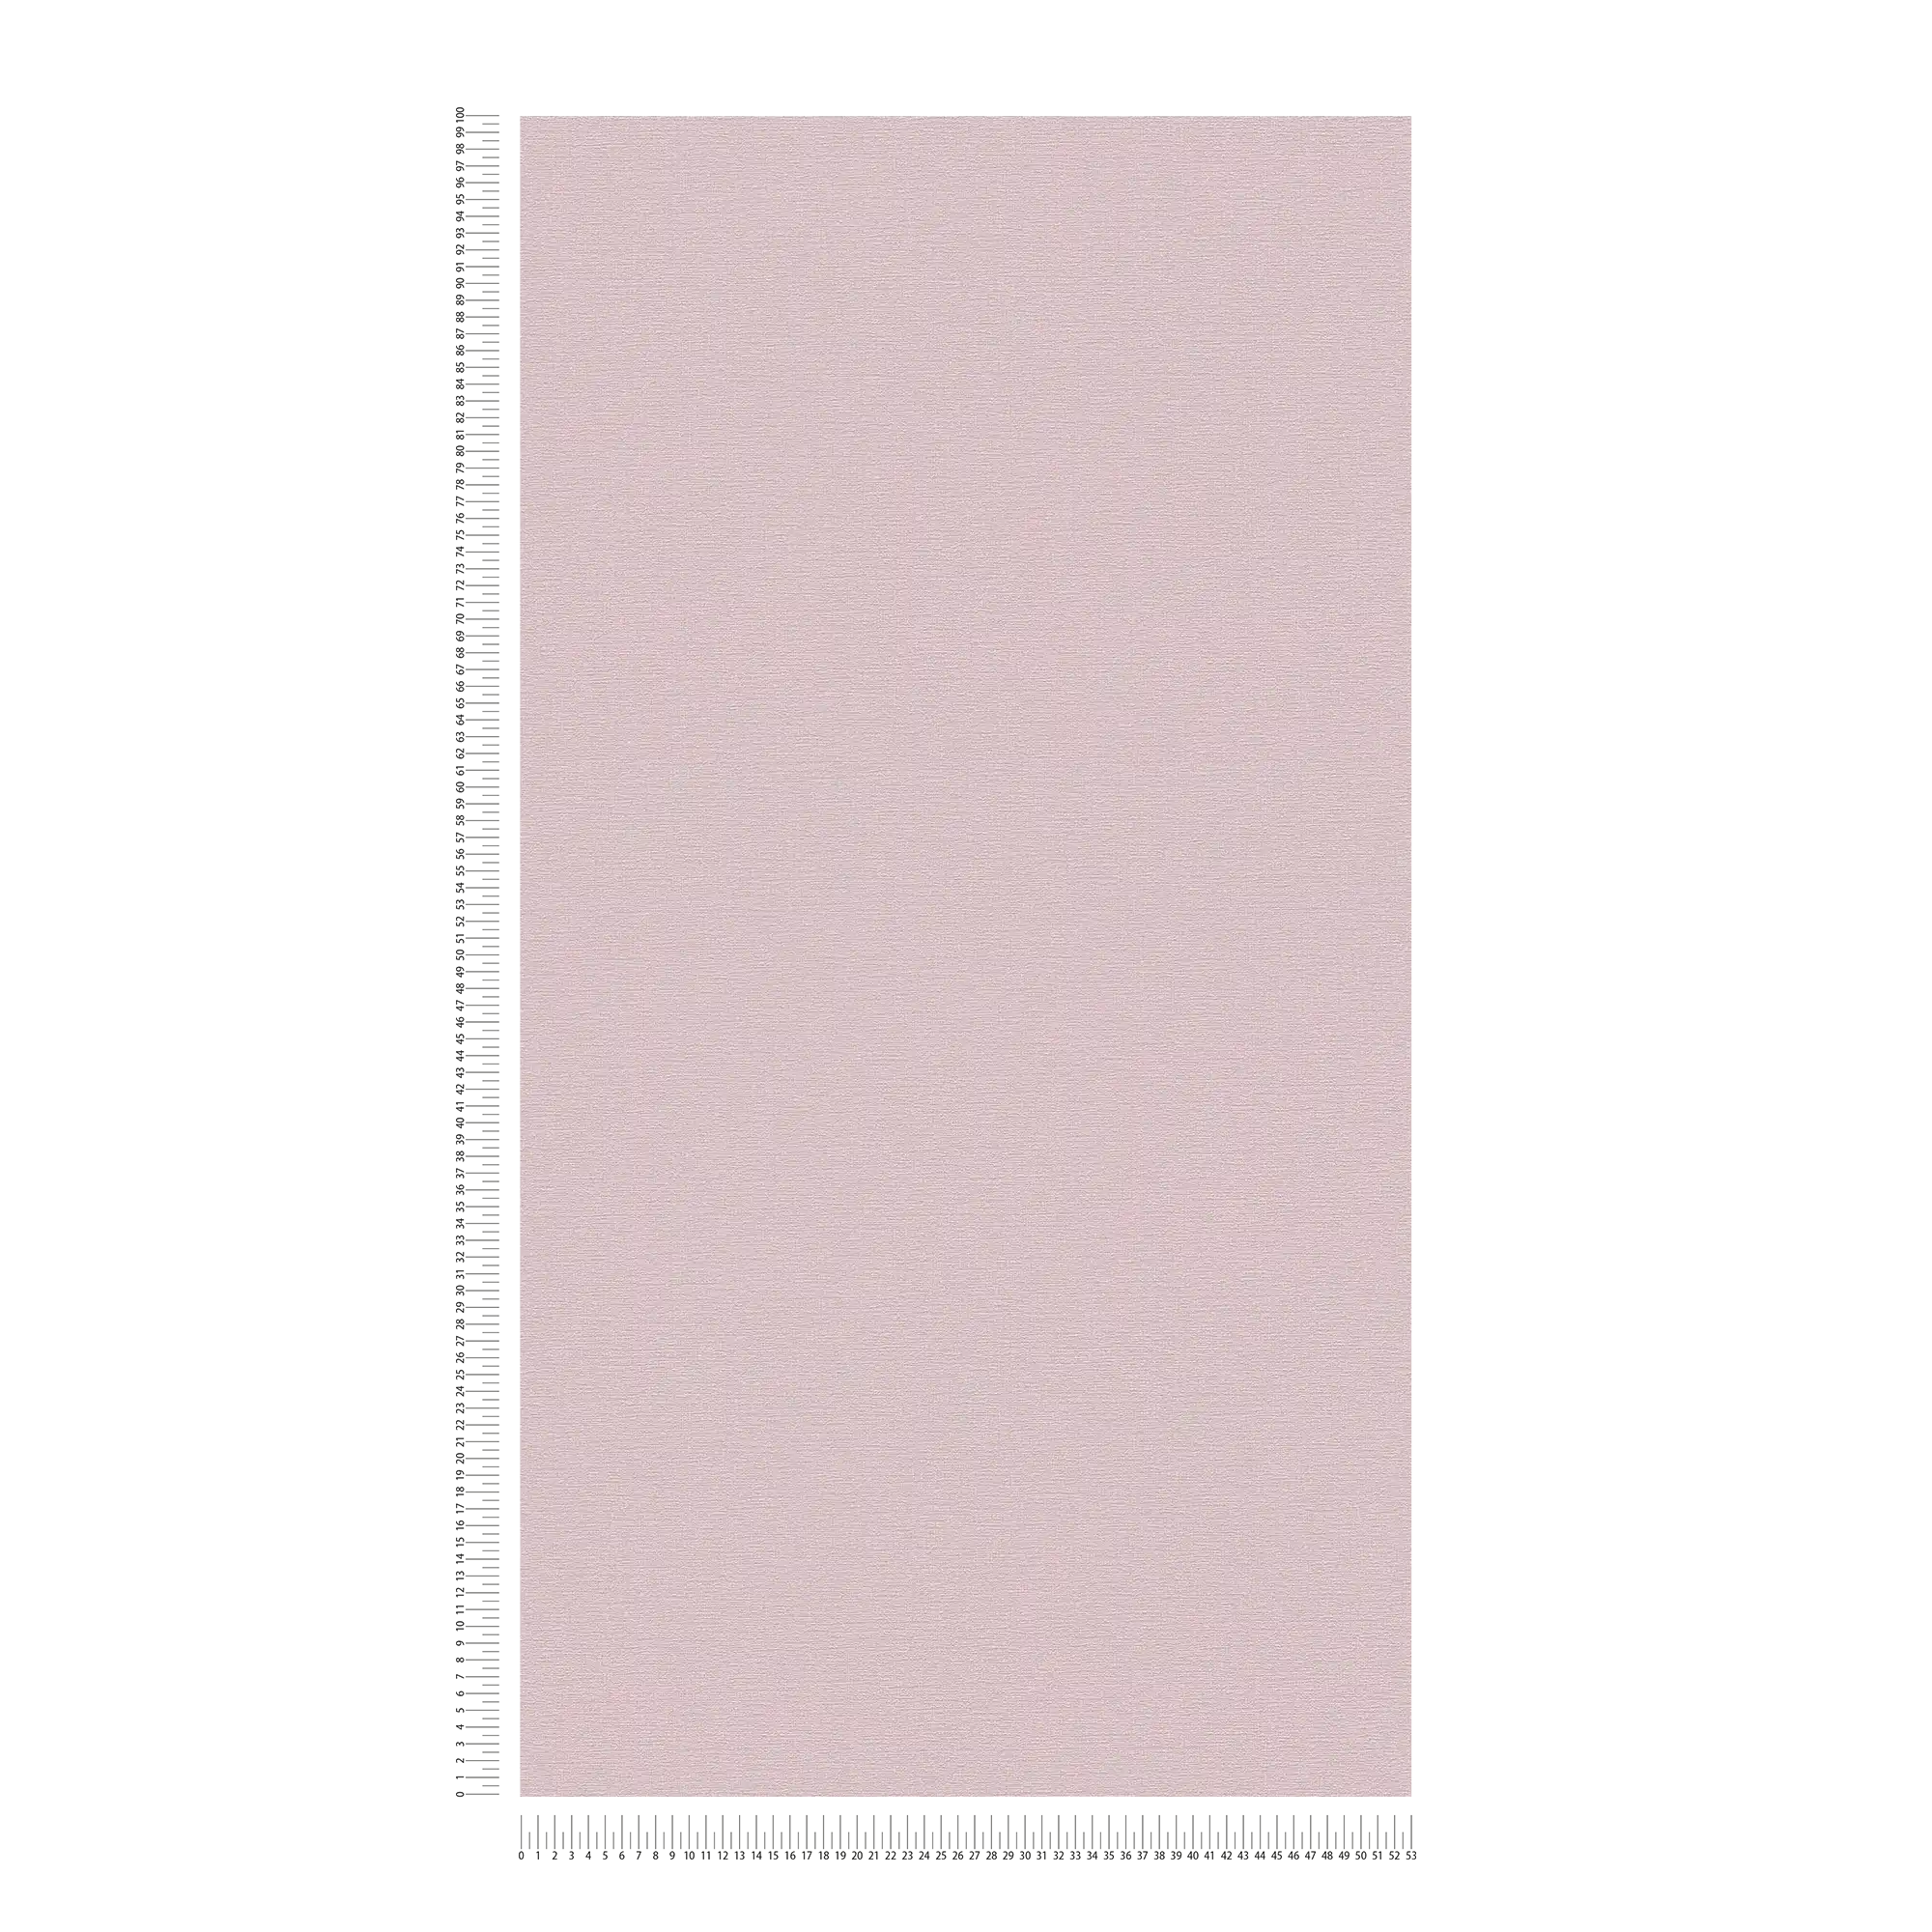             Carta da parati unitaria con texture leggera - rosa, rosa scuro
        